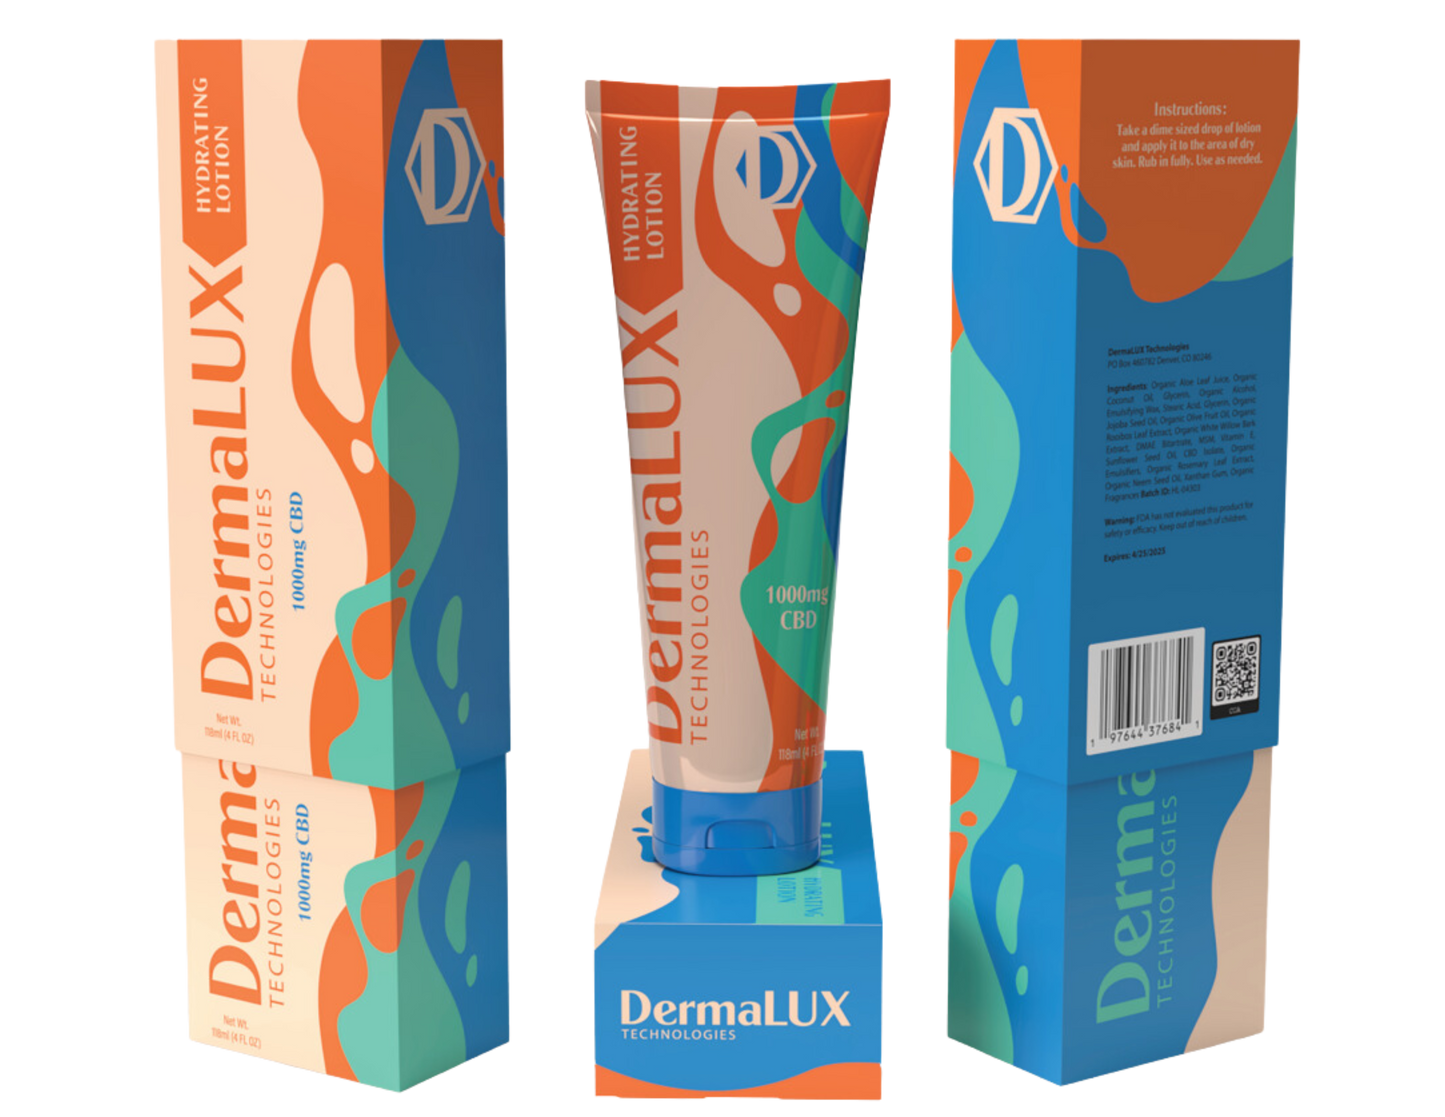 DermaLUX Hydration Lotion - DermaLUX Technologies